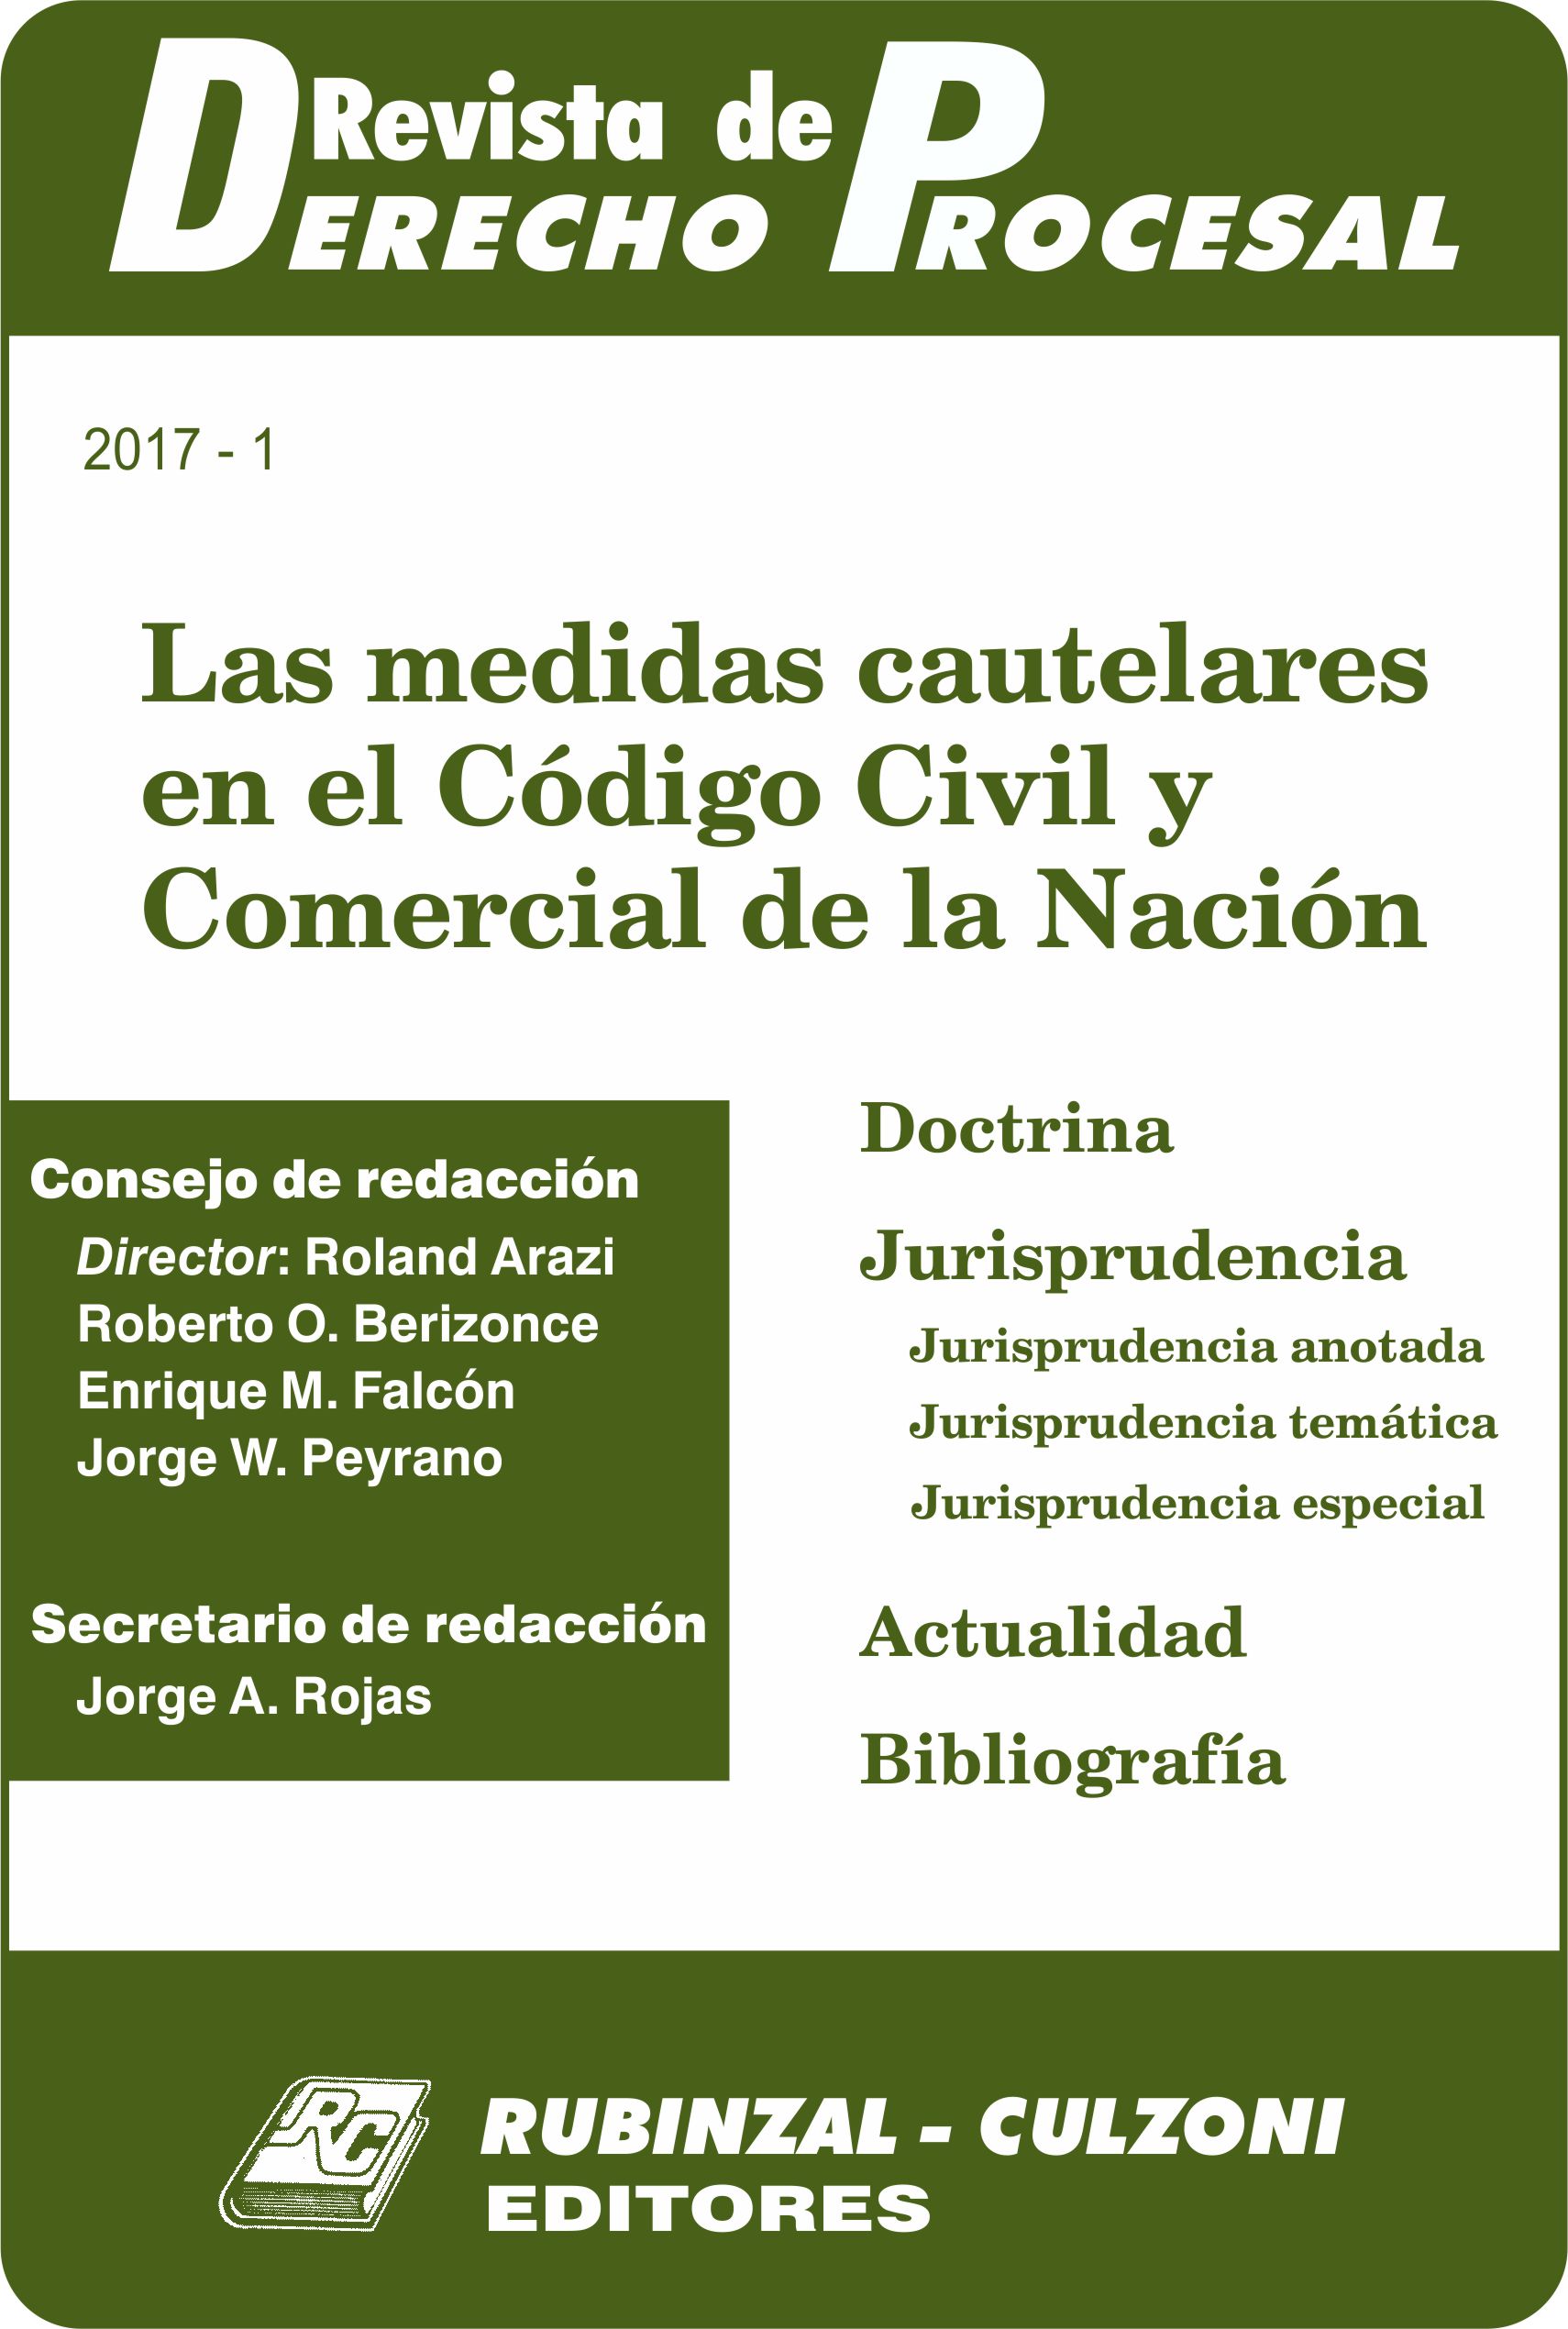 Revista de Derecho Procesal - Las medidas cautelares en el Código Civil y Comercial de la Nación